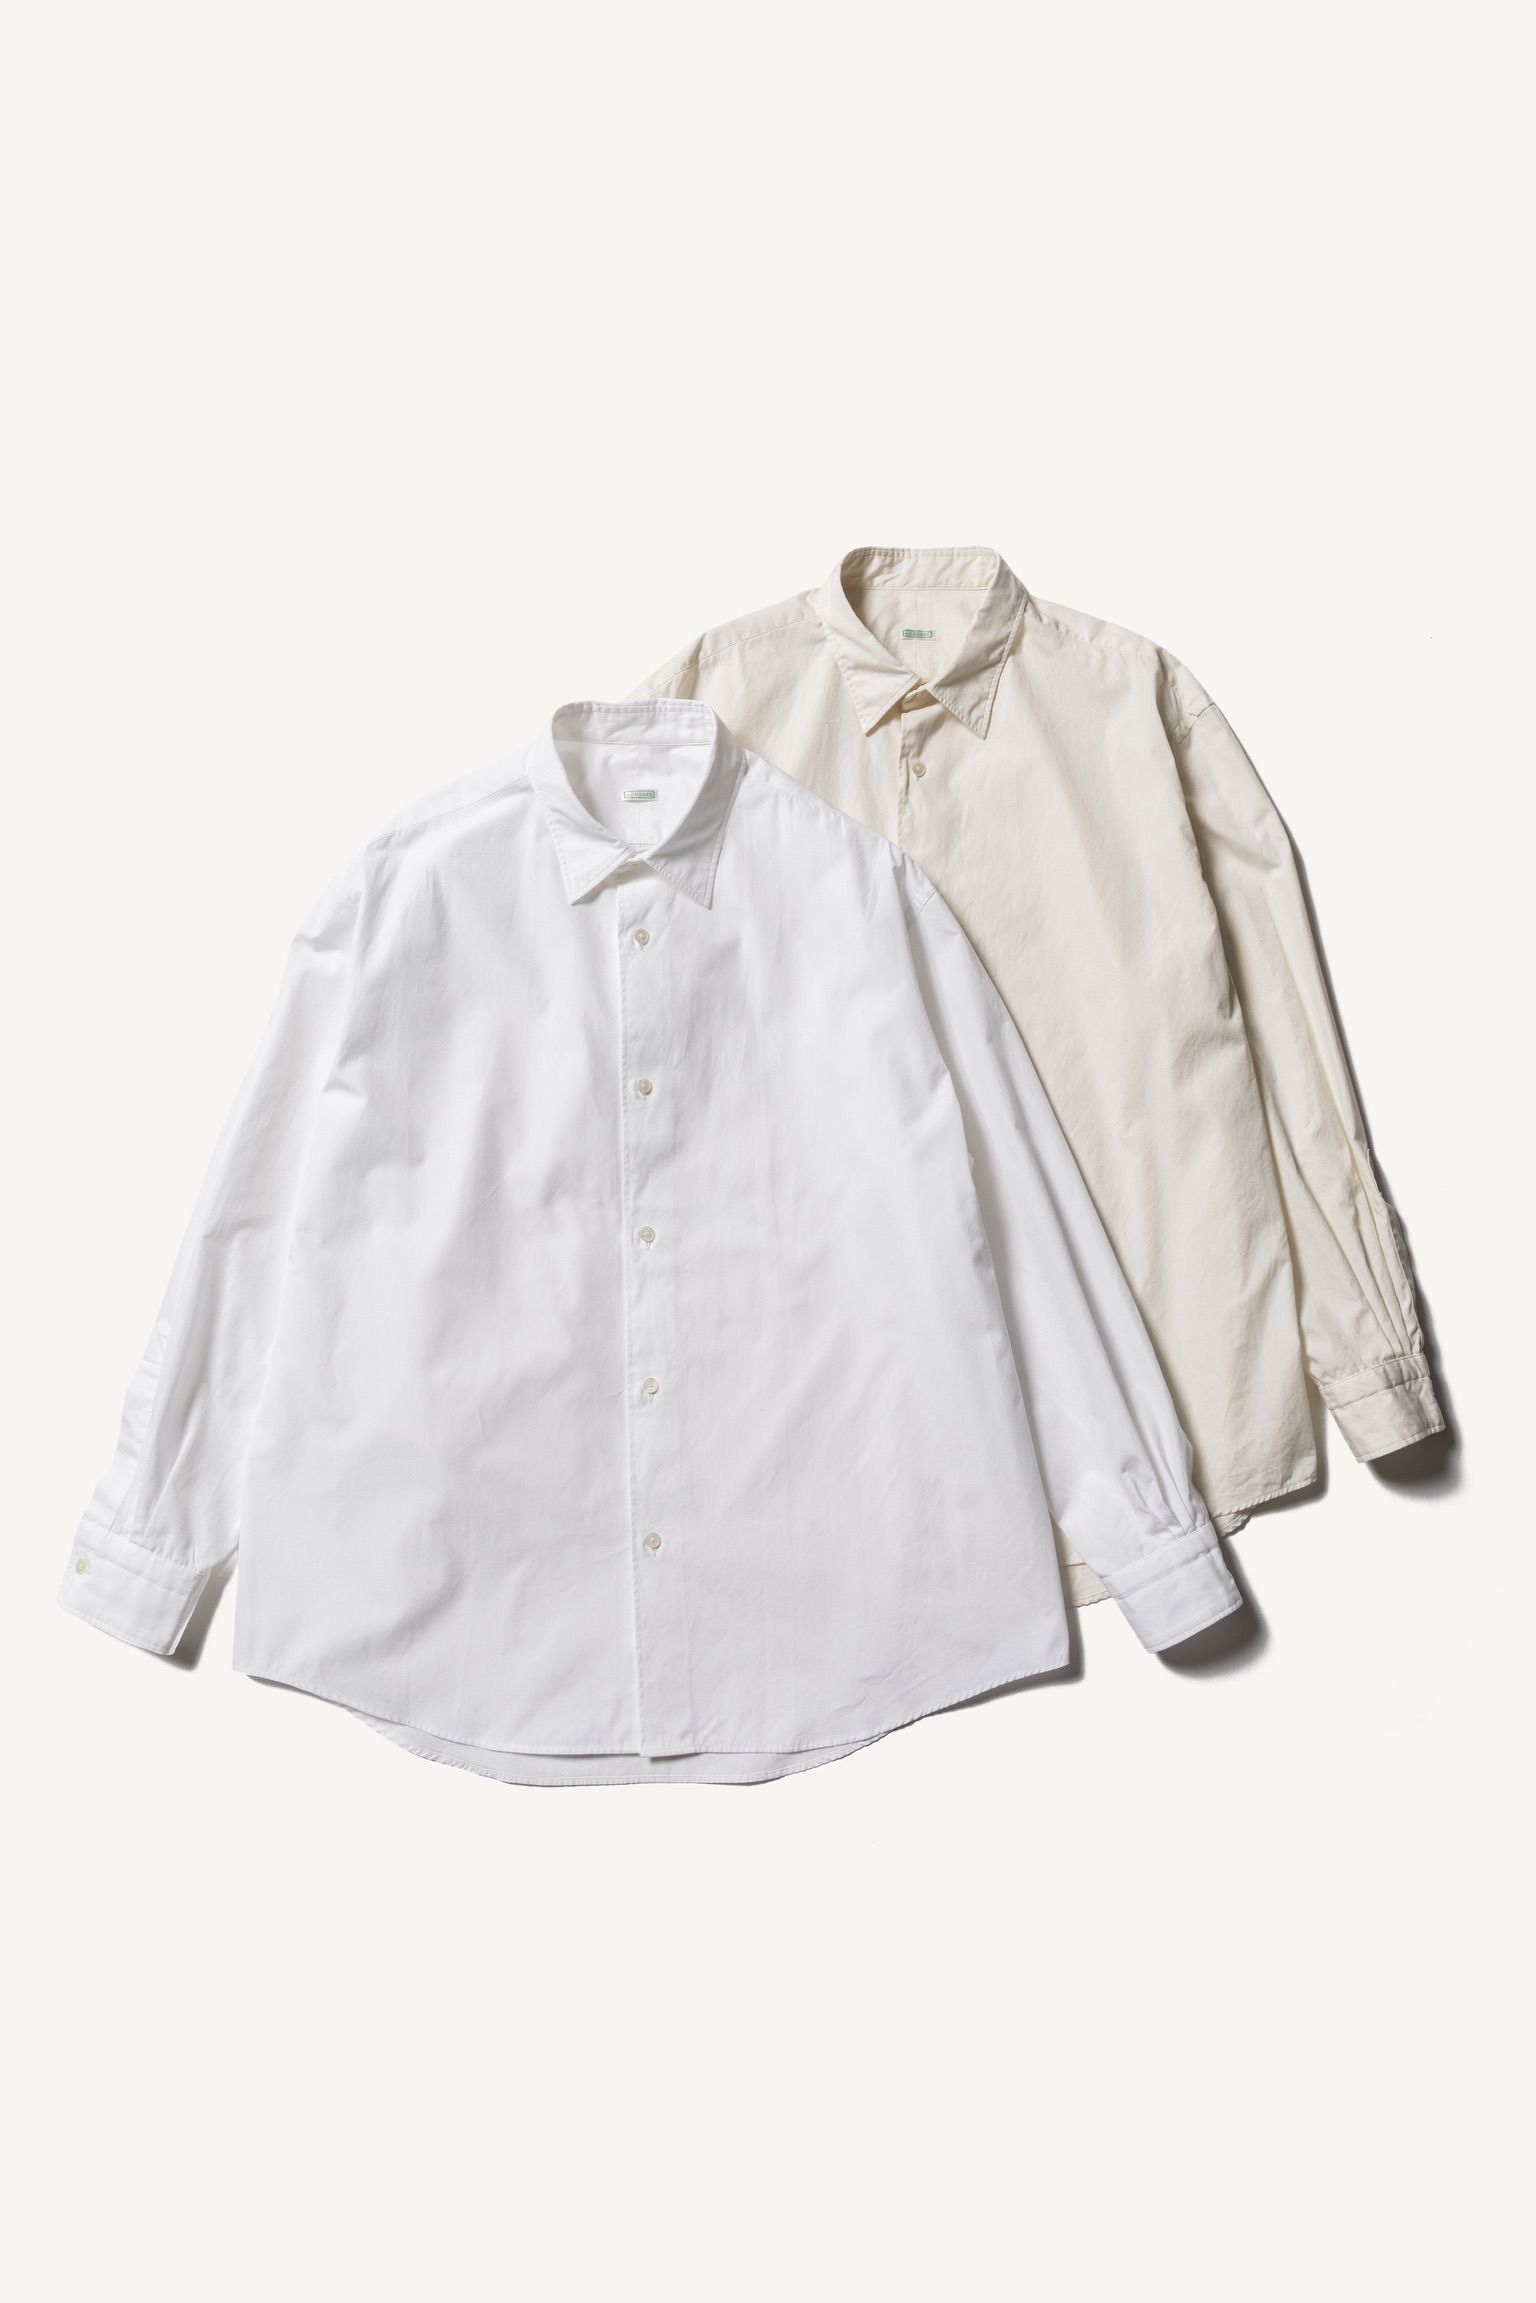 A.PRESSE - アプレッセ22FW Regular Collar Shirt(22AAP-02-10H)WHITE 